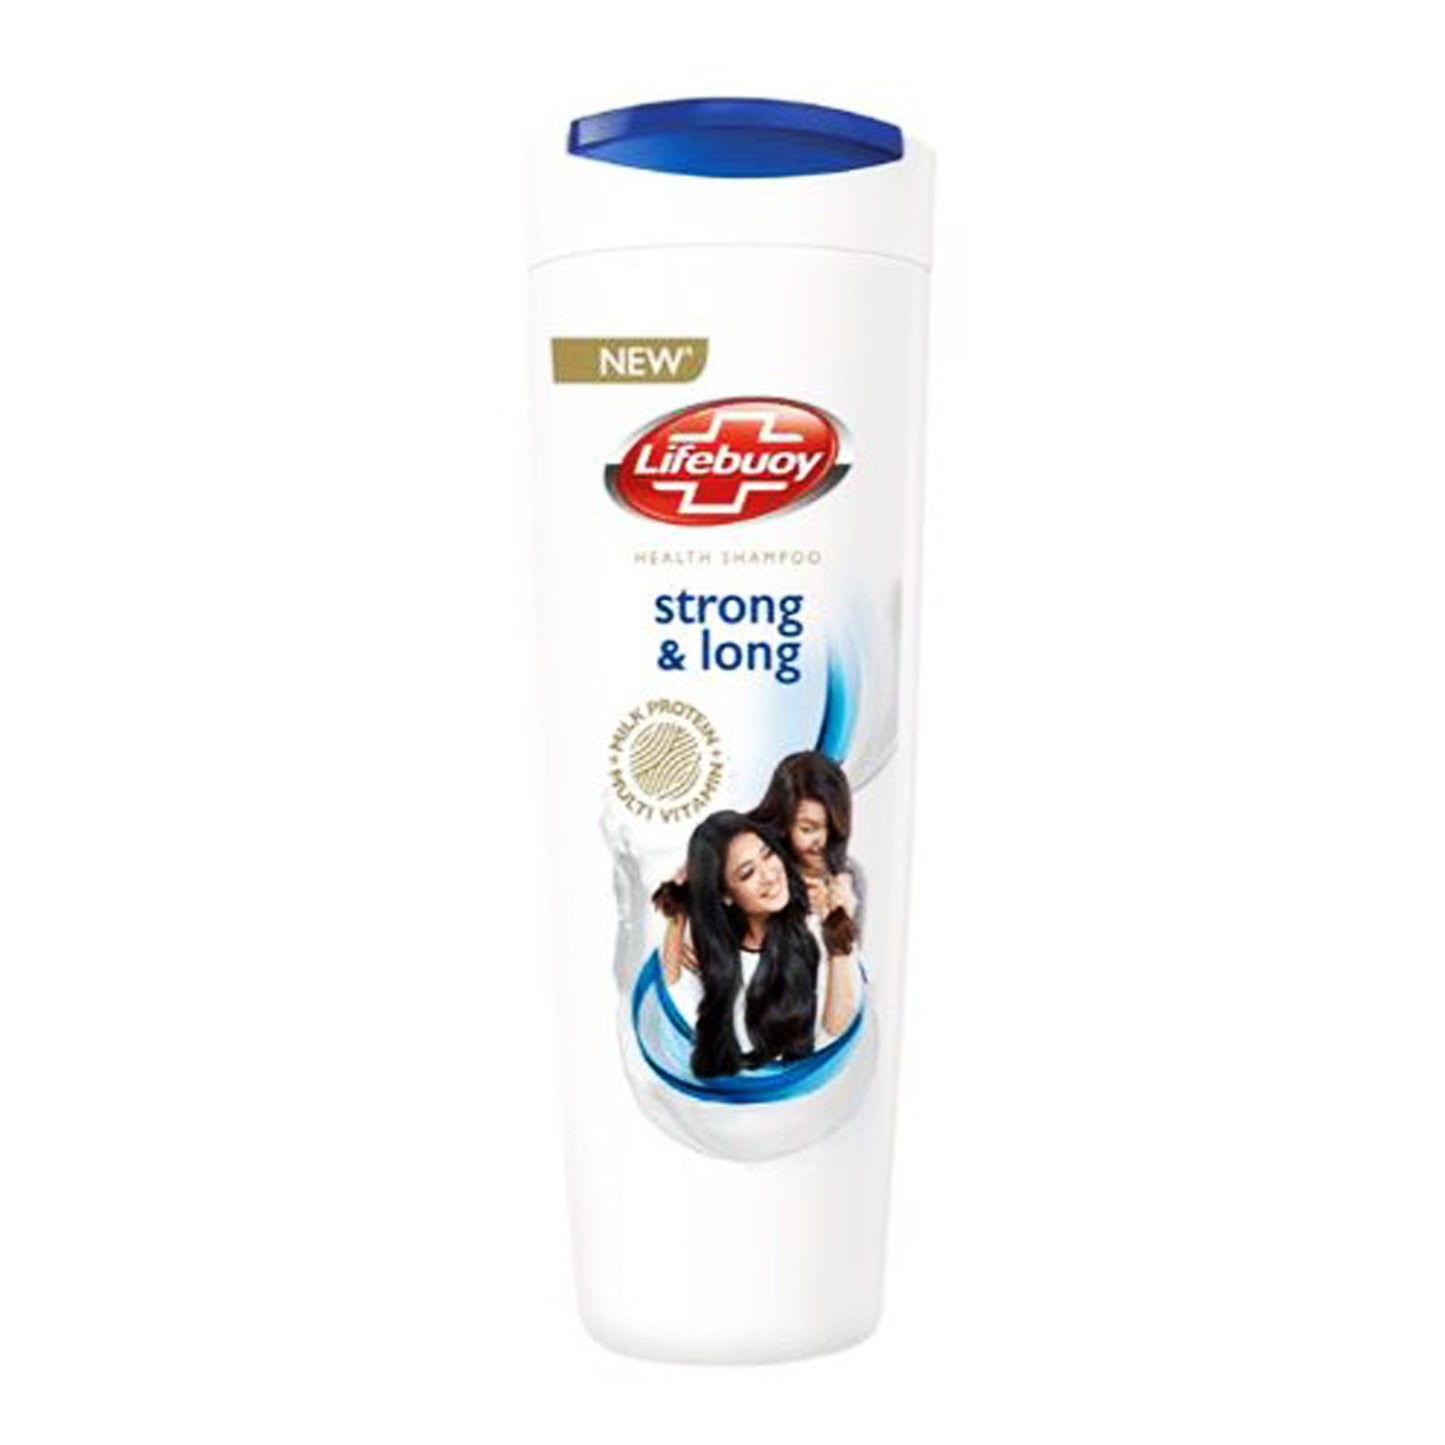 Lifebuoy Health Shampoo forte e lungo (175 ml)